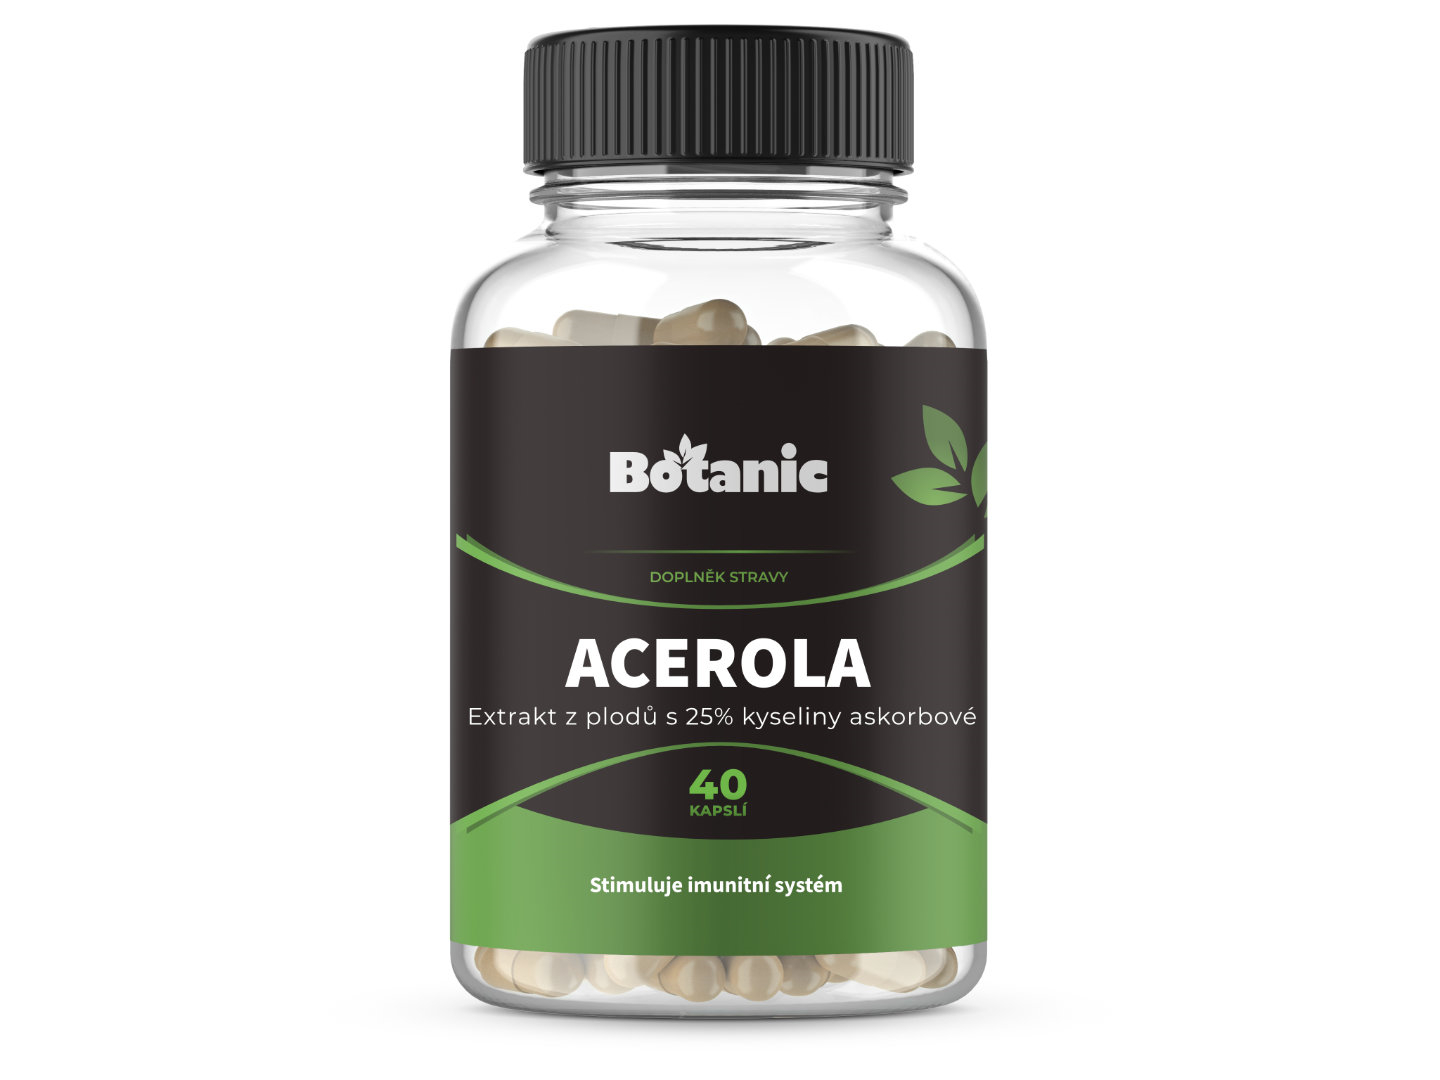 Botanic Acerola - Extrakt z plodů s 25% kyseliny askorbové v kapslích 40kap.